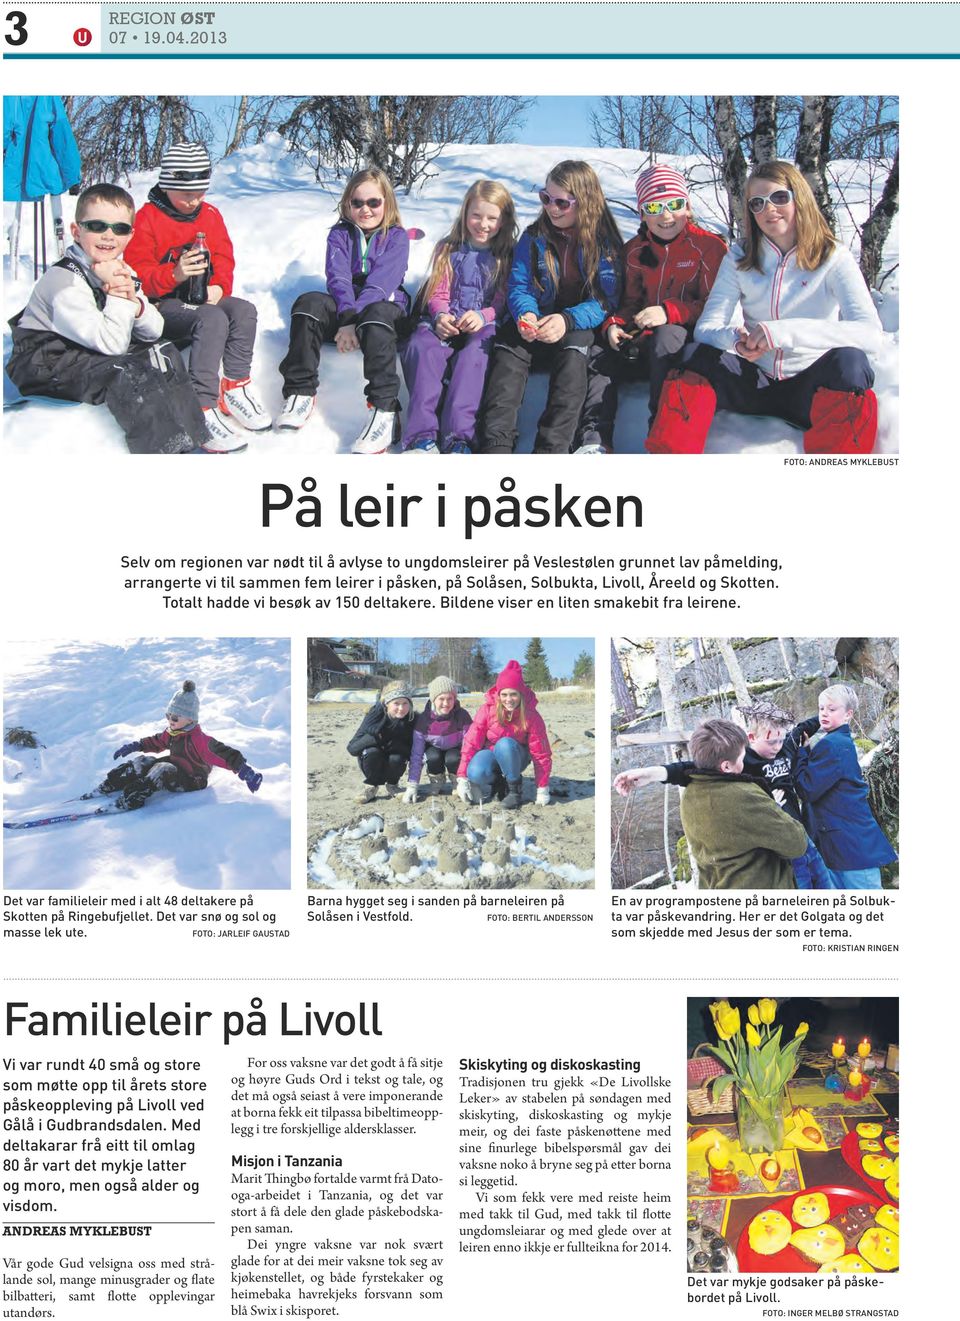 Det var familieleir med i alt 48 deltakere på Skotten på Ringebufjellet. Det var snø og sol og masse lek ute. FOTO: Jarleif GAUSTAd Barna hygget seg i sanden på barneleiren på Solåsen i Vestfold.